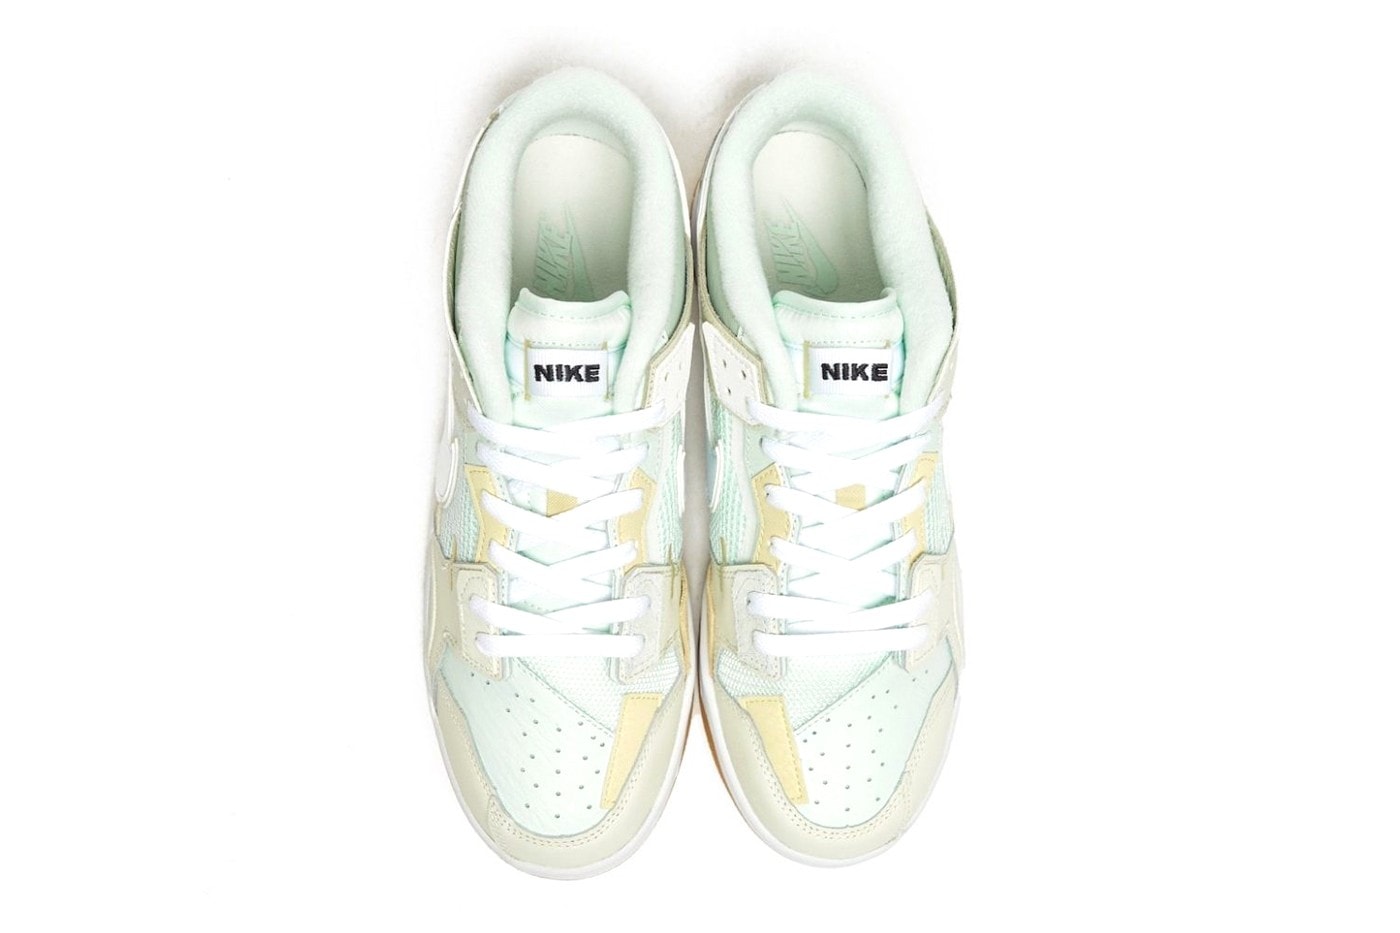 Nike Dunk Low Scrap "Sea Glass" Release Green Mint Beige Sneaker